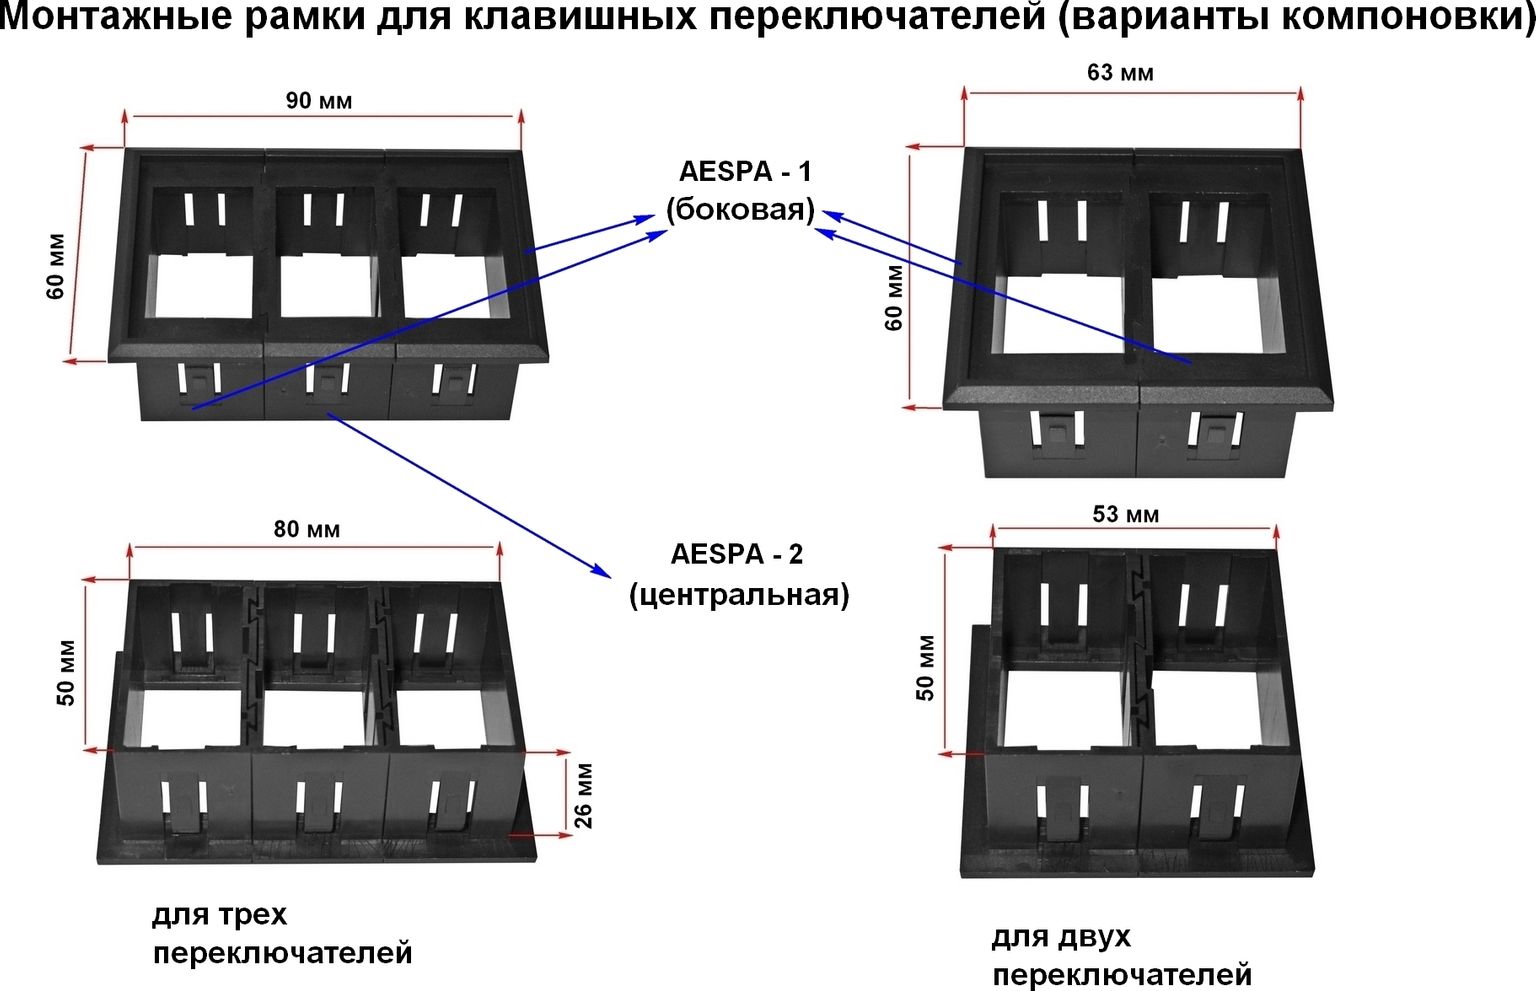 Панель центральная для групповой установки переключателей AES11185Х AESPA2 - фото 2